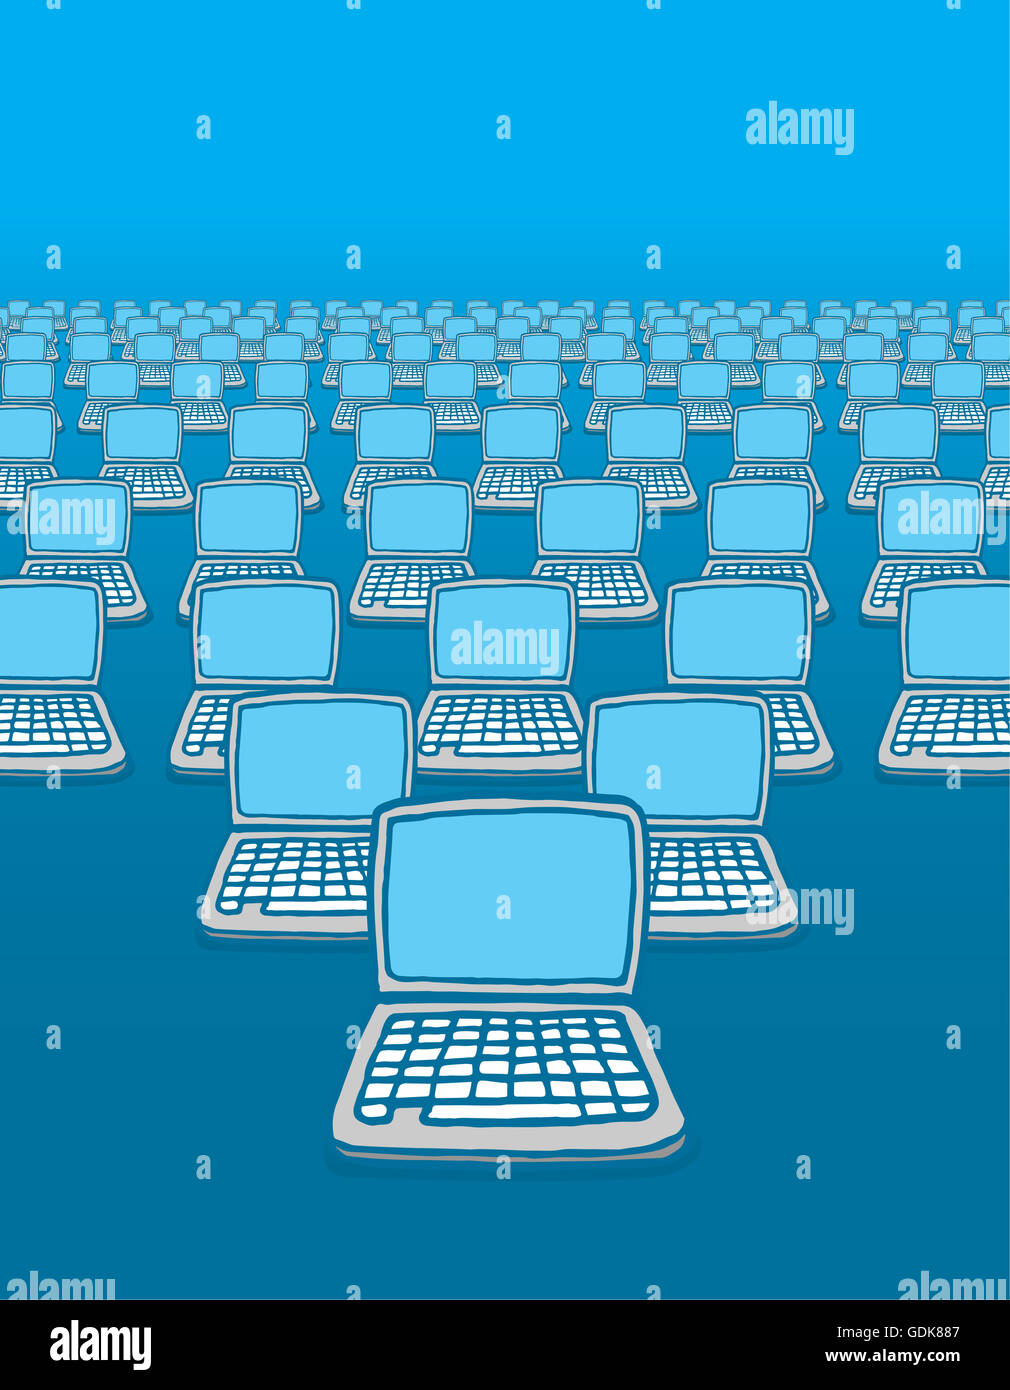 Cartoon illustration de beaucoup d'ordinateurs connectés à internet Banque D'Images